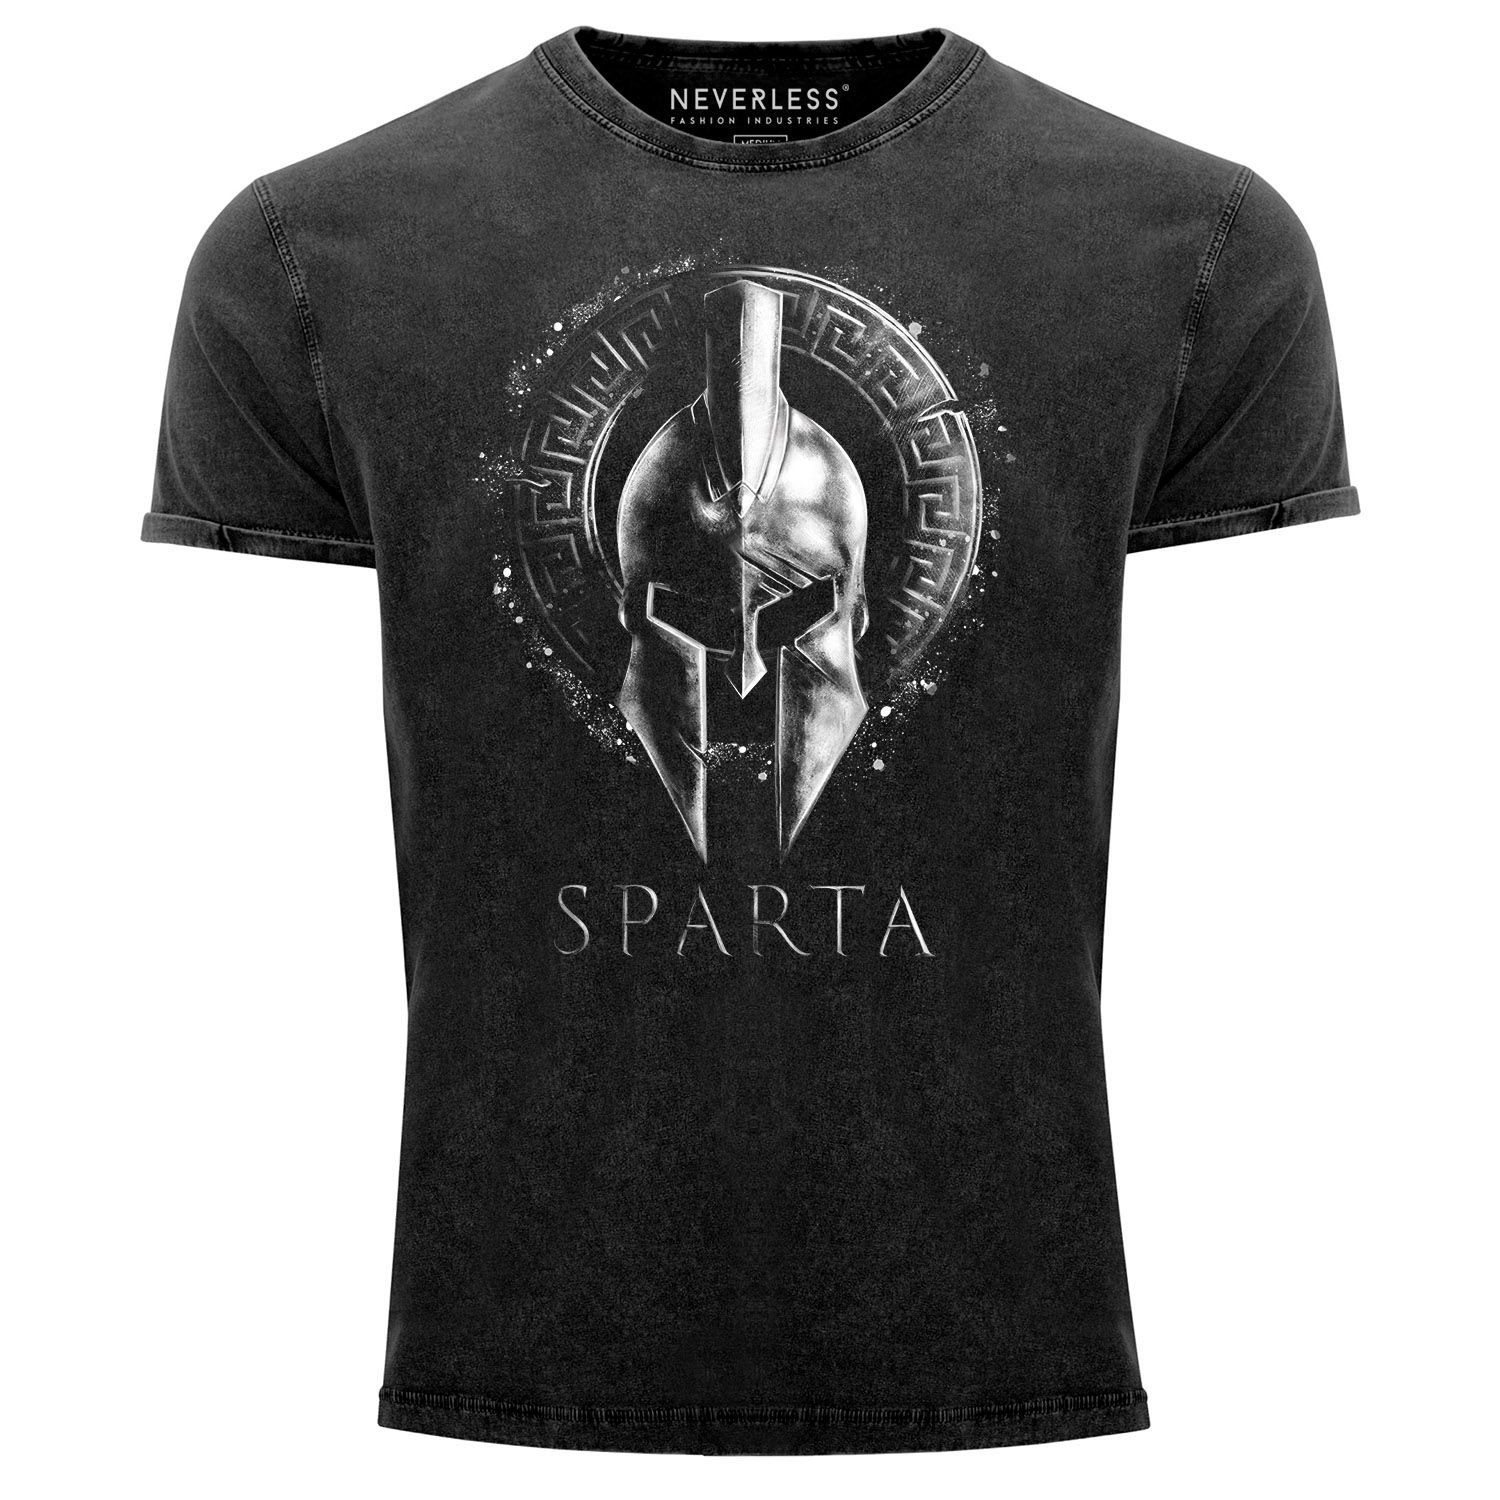 Neverless Print-Shirt Herren Vintage Shirt Used Krieger Neverless® Printshirt Aufdruck Sparta Look Fit Warrior T-Shirt Slim mit Print Helm